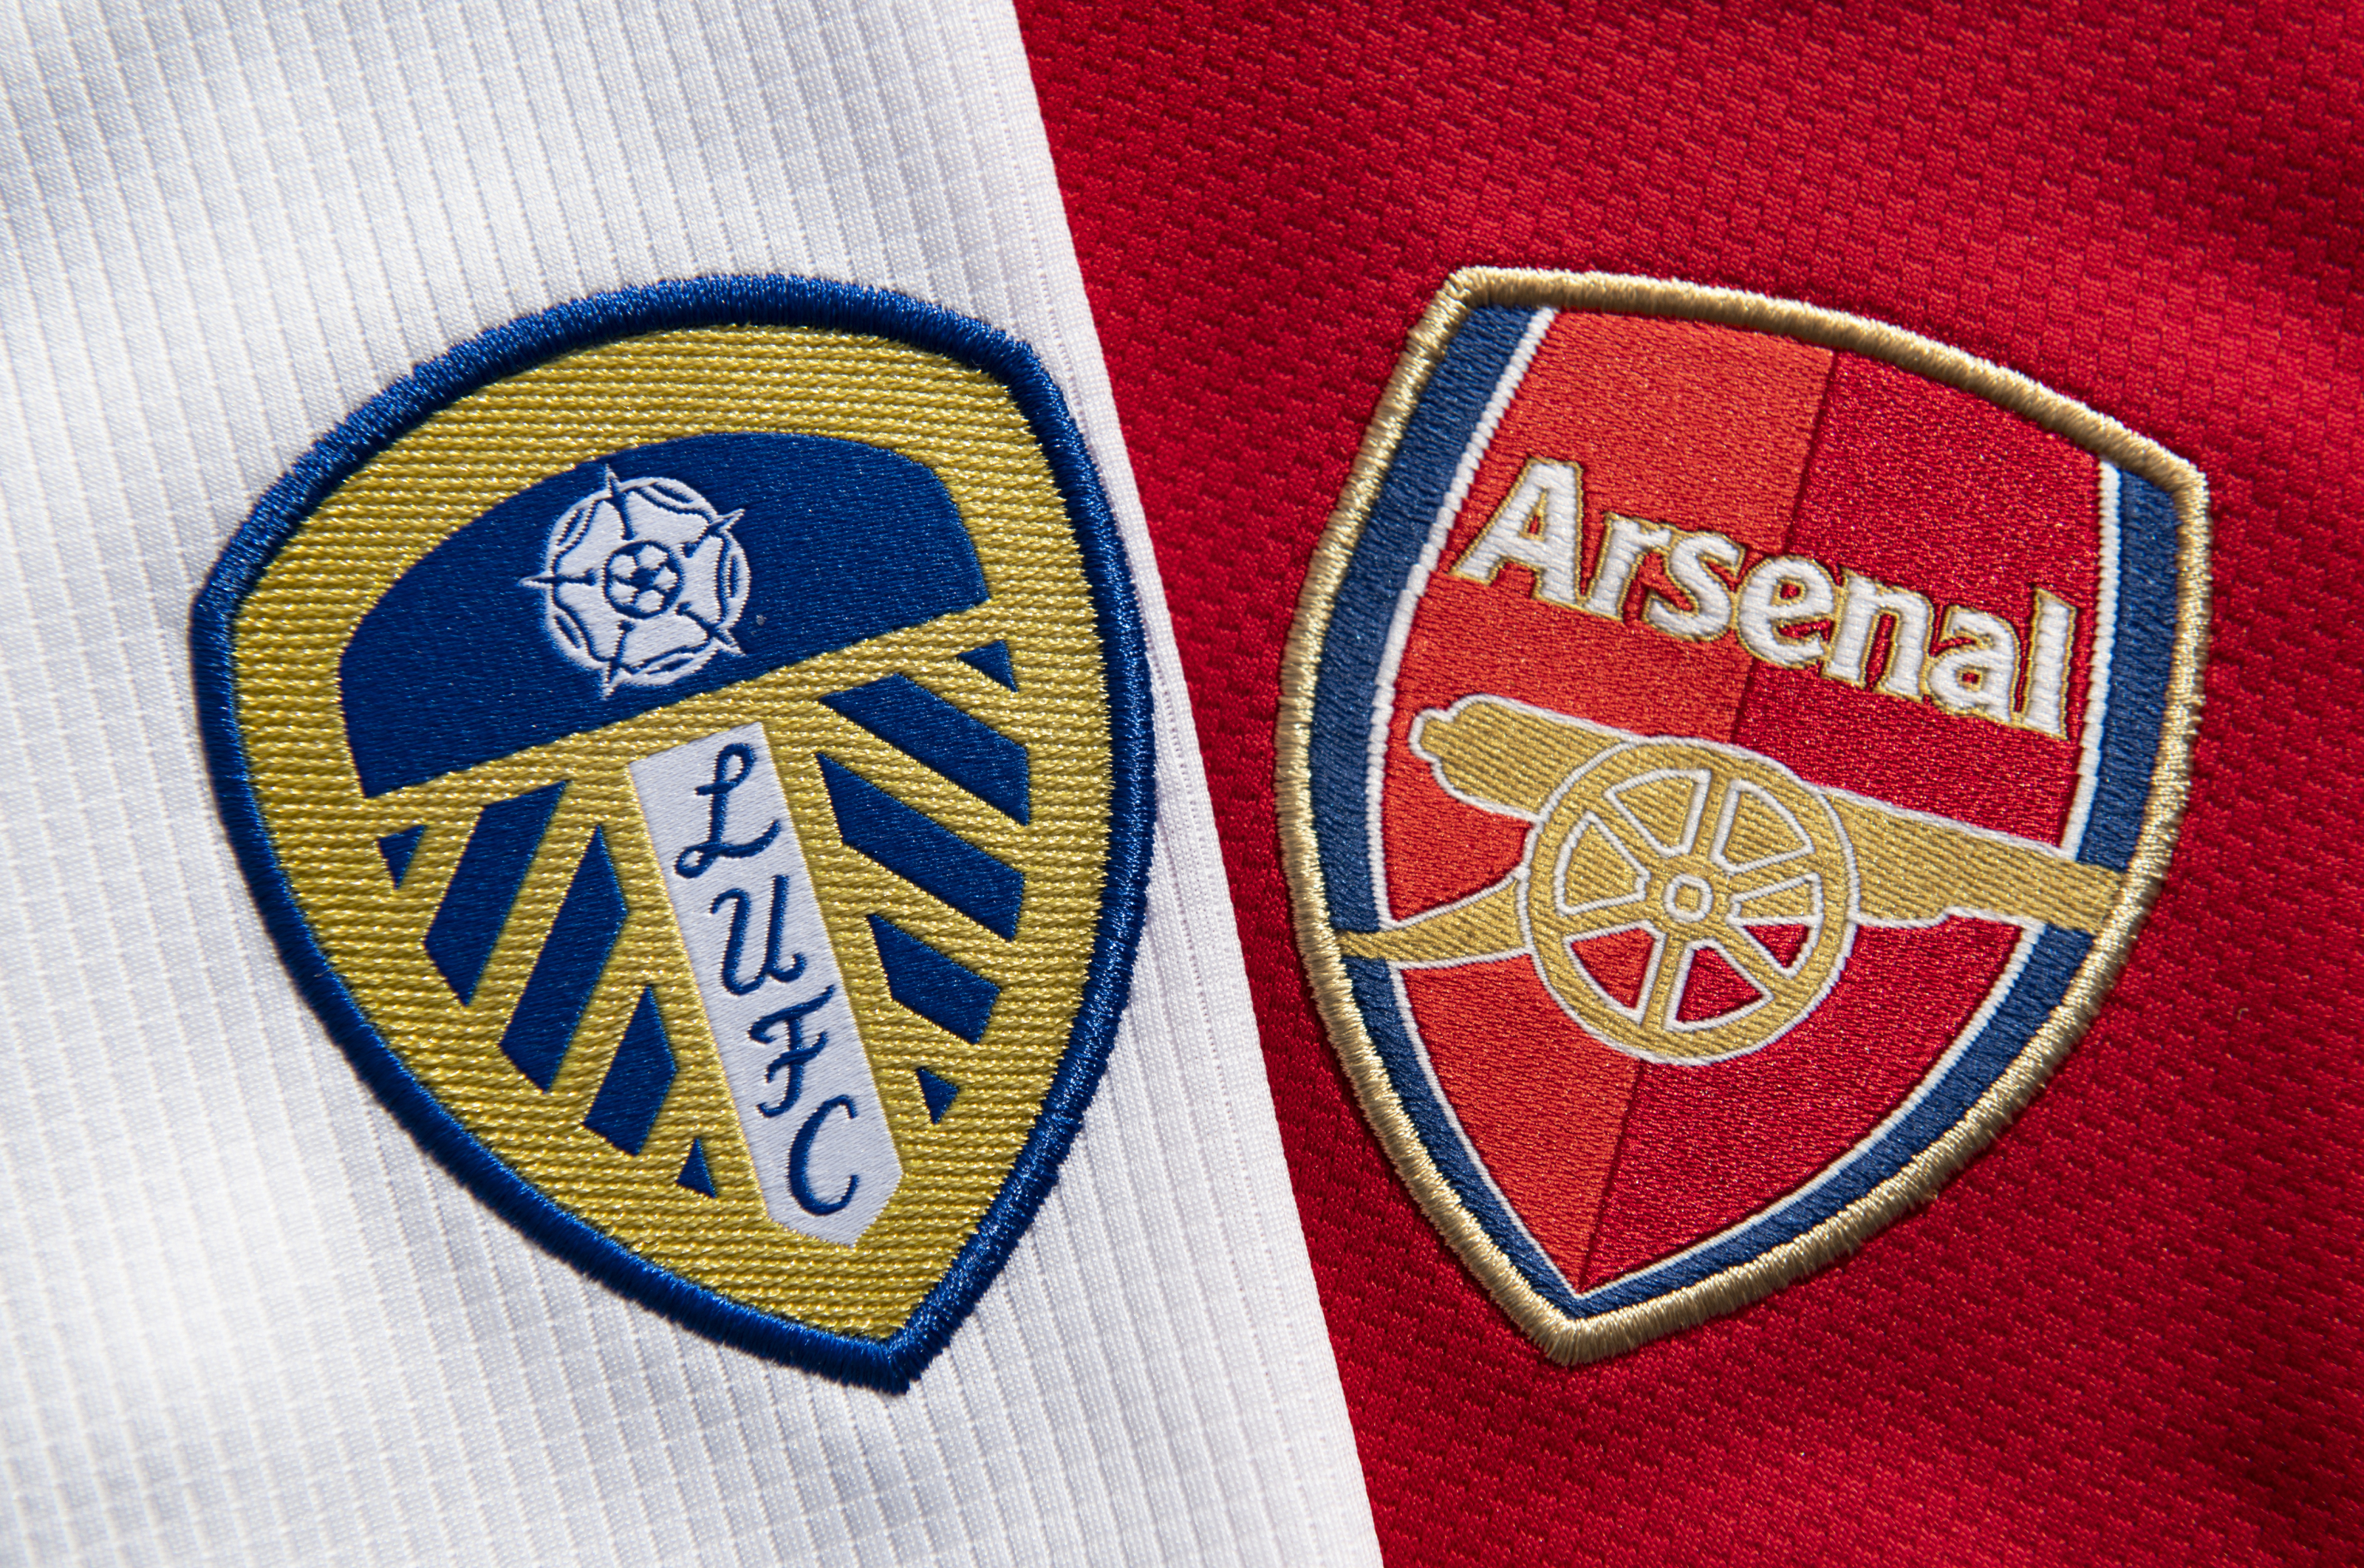 Leeds vs Arsenal preview Saturdays Premier League meeting